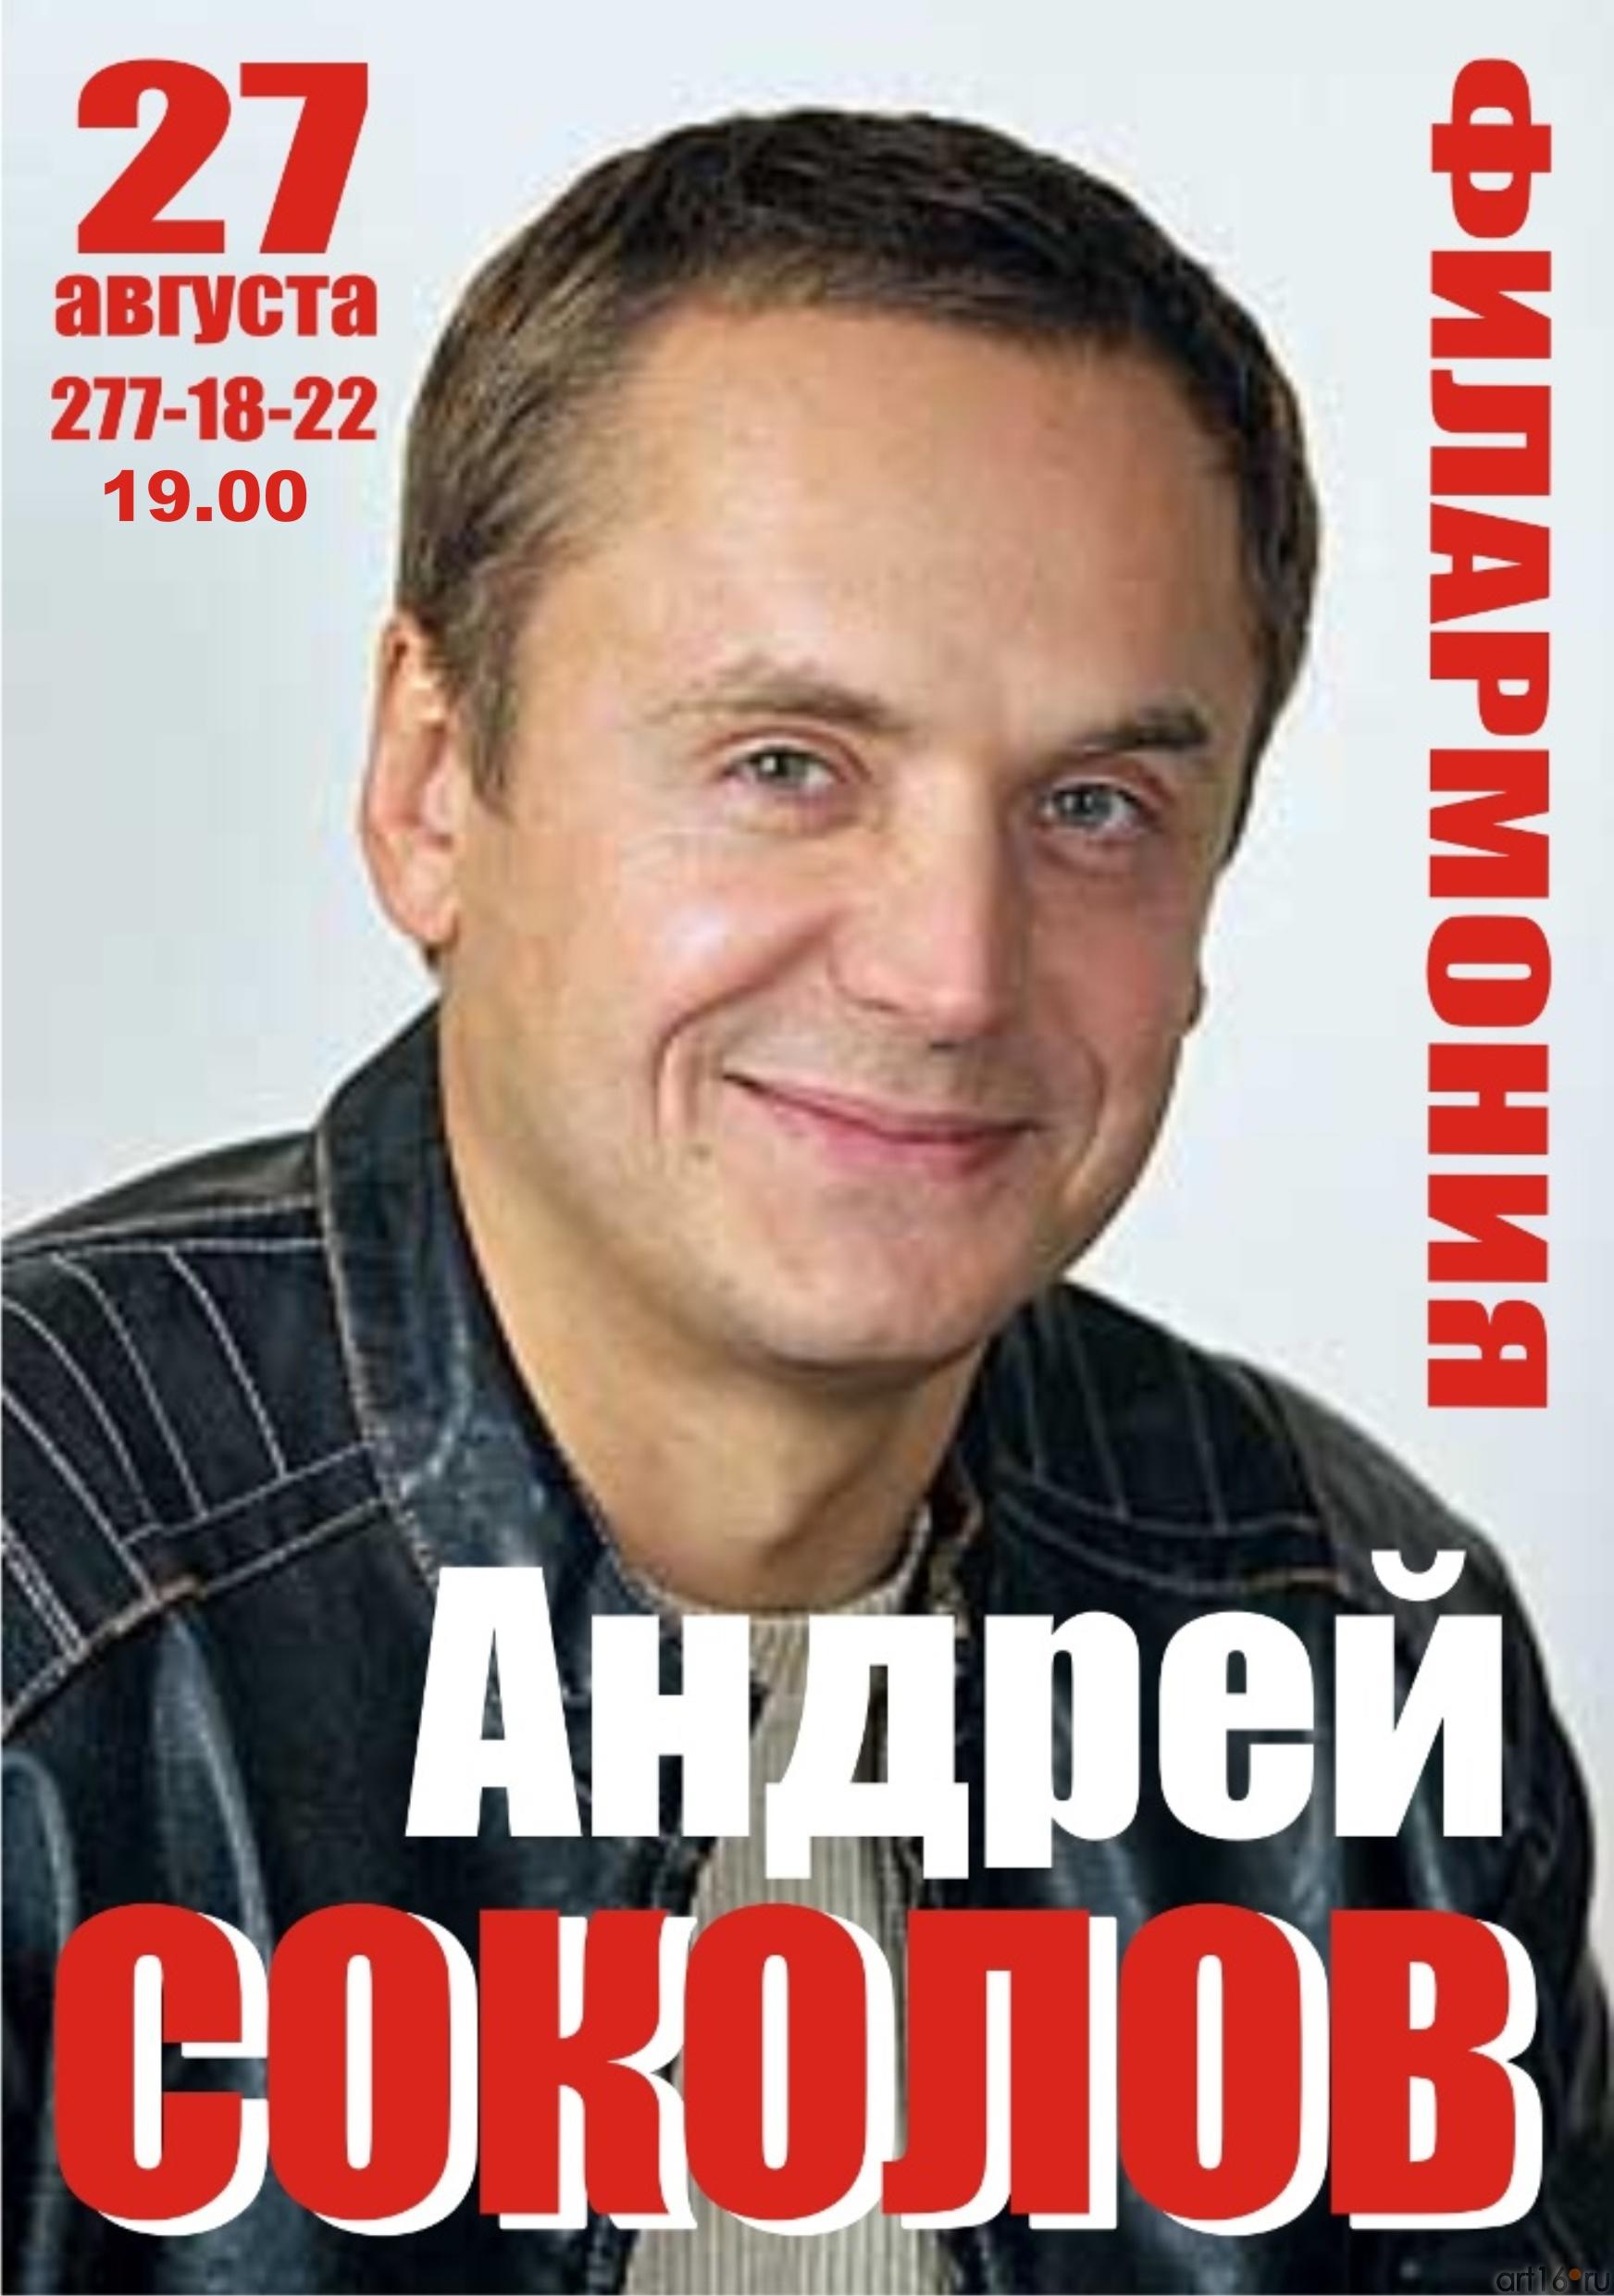 Андрей Соколов. 27 августа 2011::Фото для статей